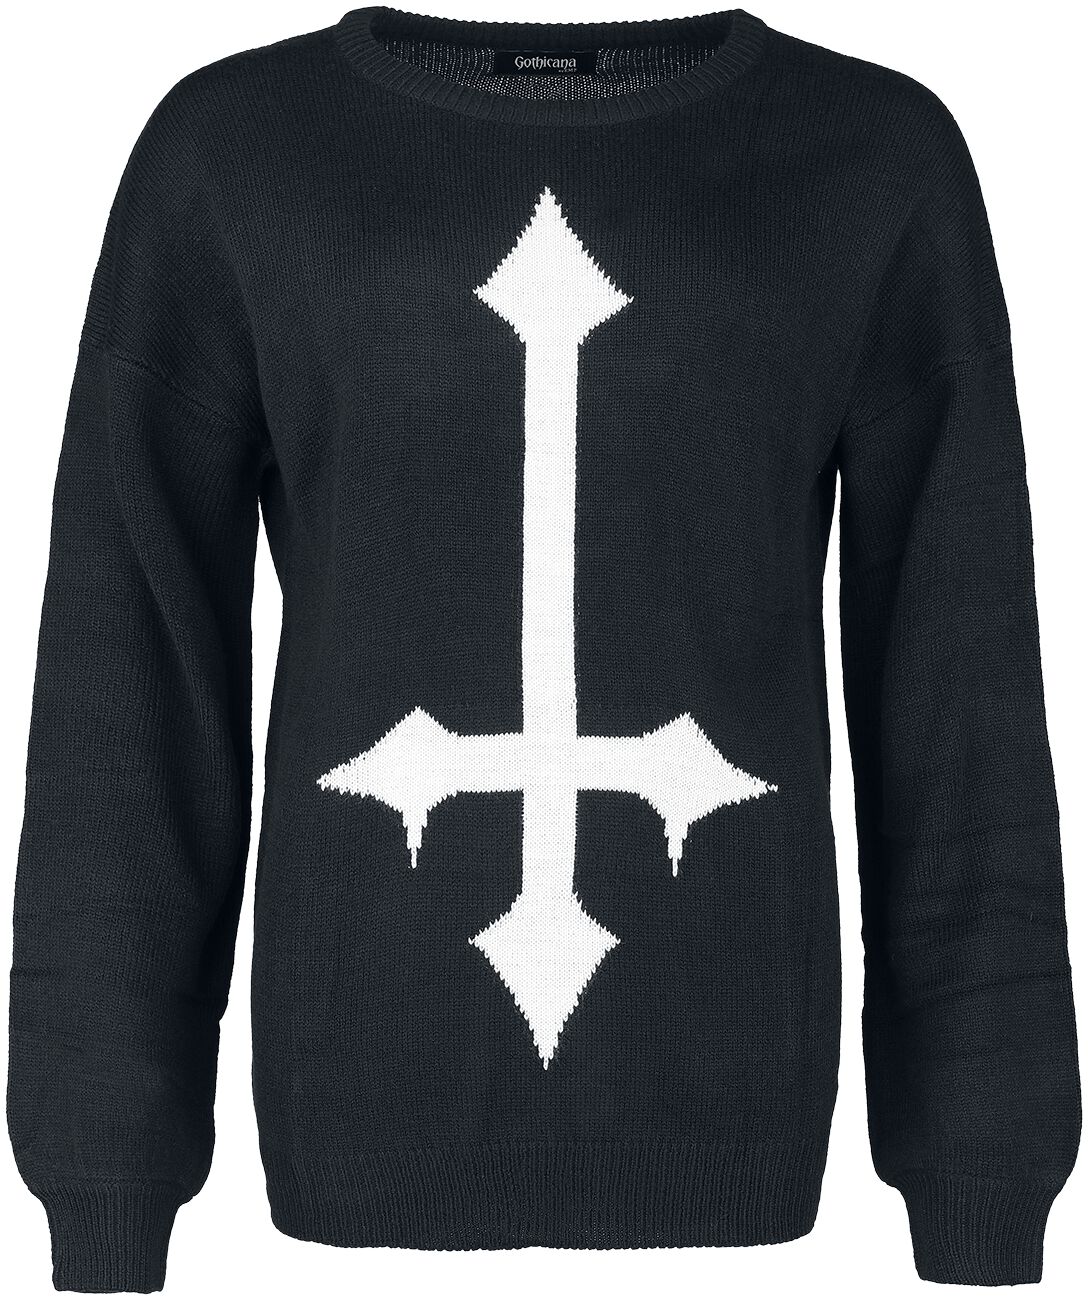 Pull tricoté Gothic de Black Blood by Gothicana - Strickpullover mit großem Kreuz - XS à XXL - pour 